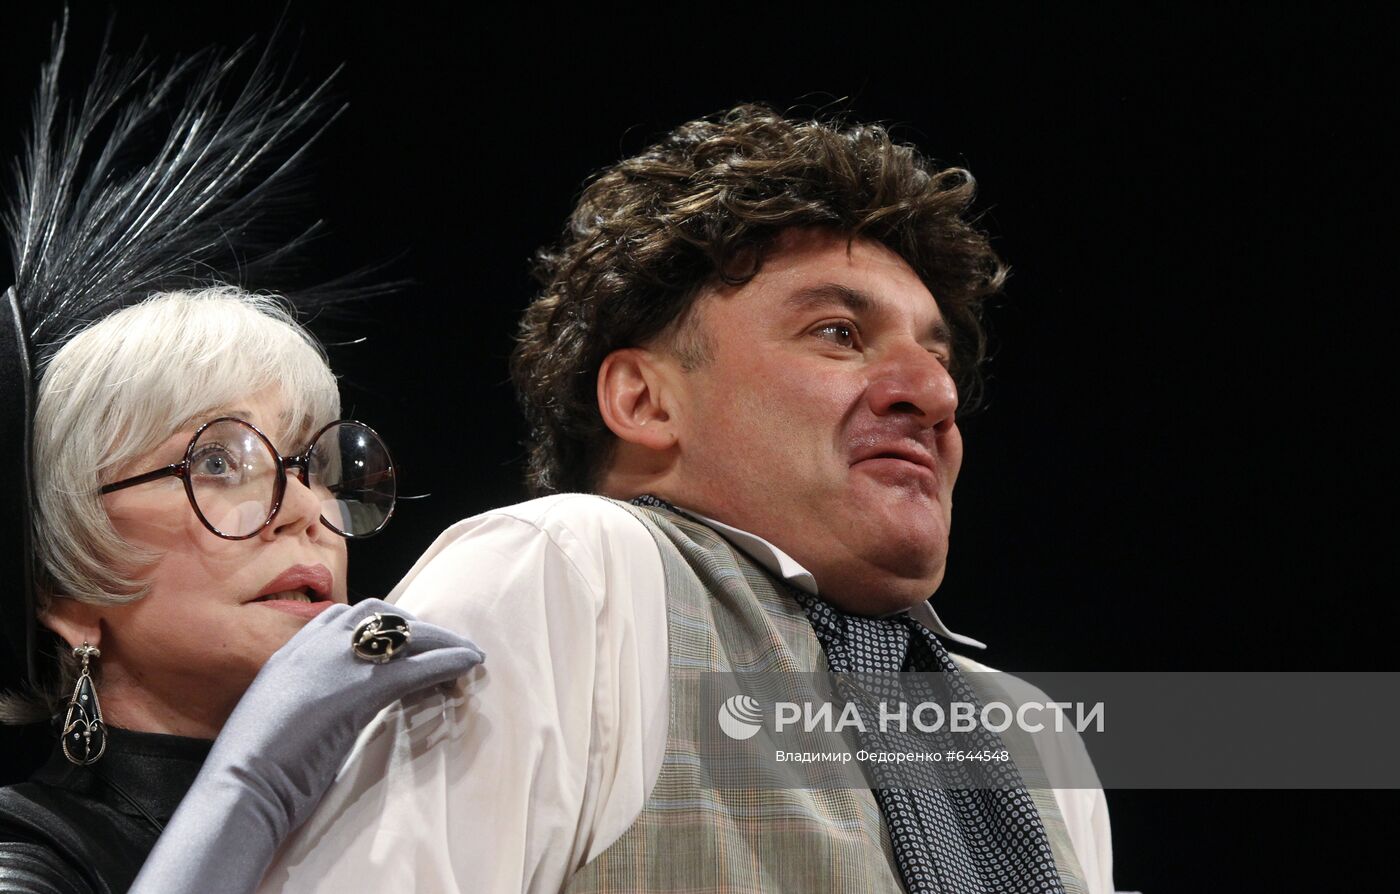 Пресс-показ спектакля "Бешеные деньги" в Театре имени А. Пушкина